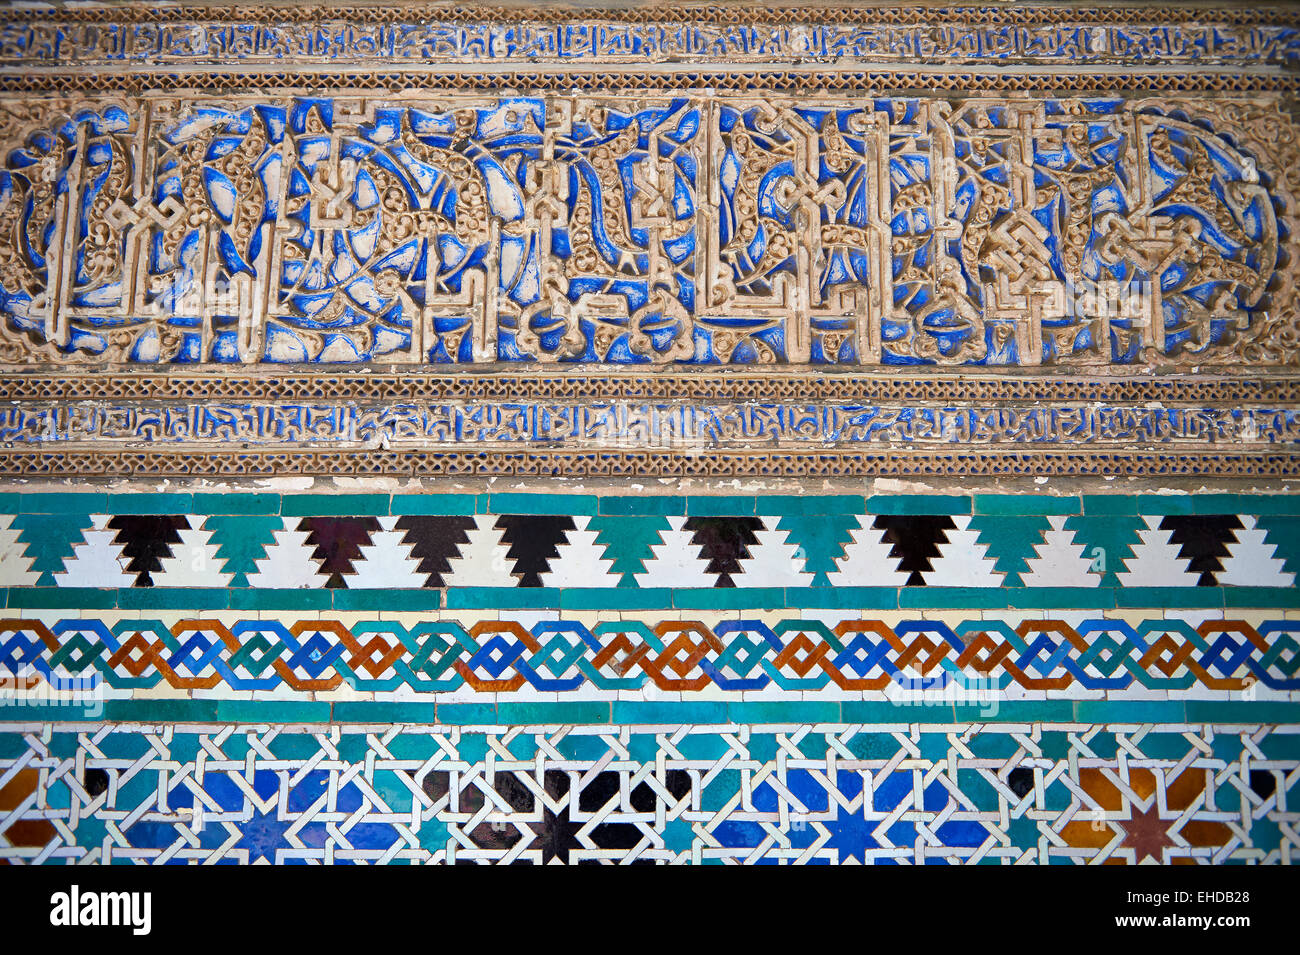 Dettaglio del Arabesque stile Mudéjar lavori in gesso, Patio de las Doncellas (Cortile dei Maiden) Alcazar di Siviglia, Spagna Foto Stock